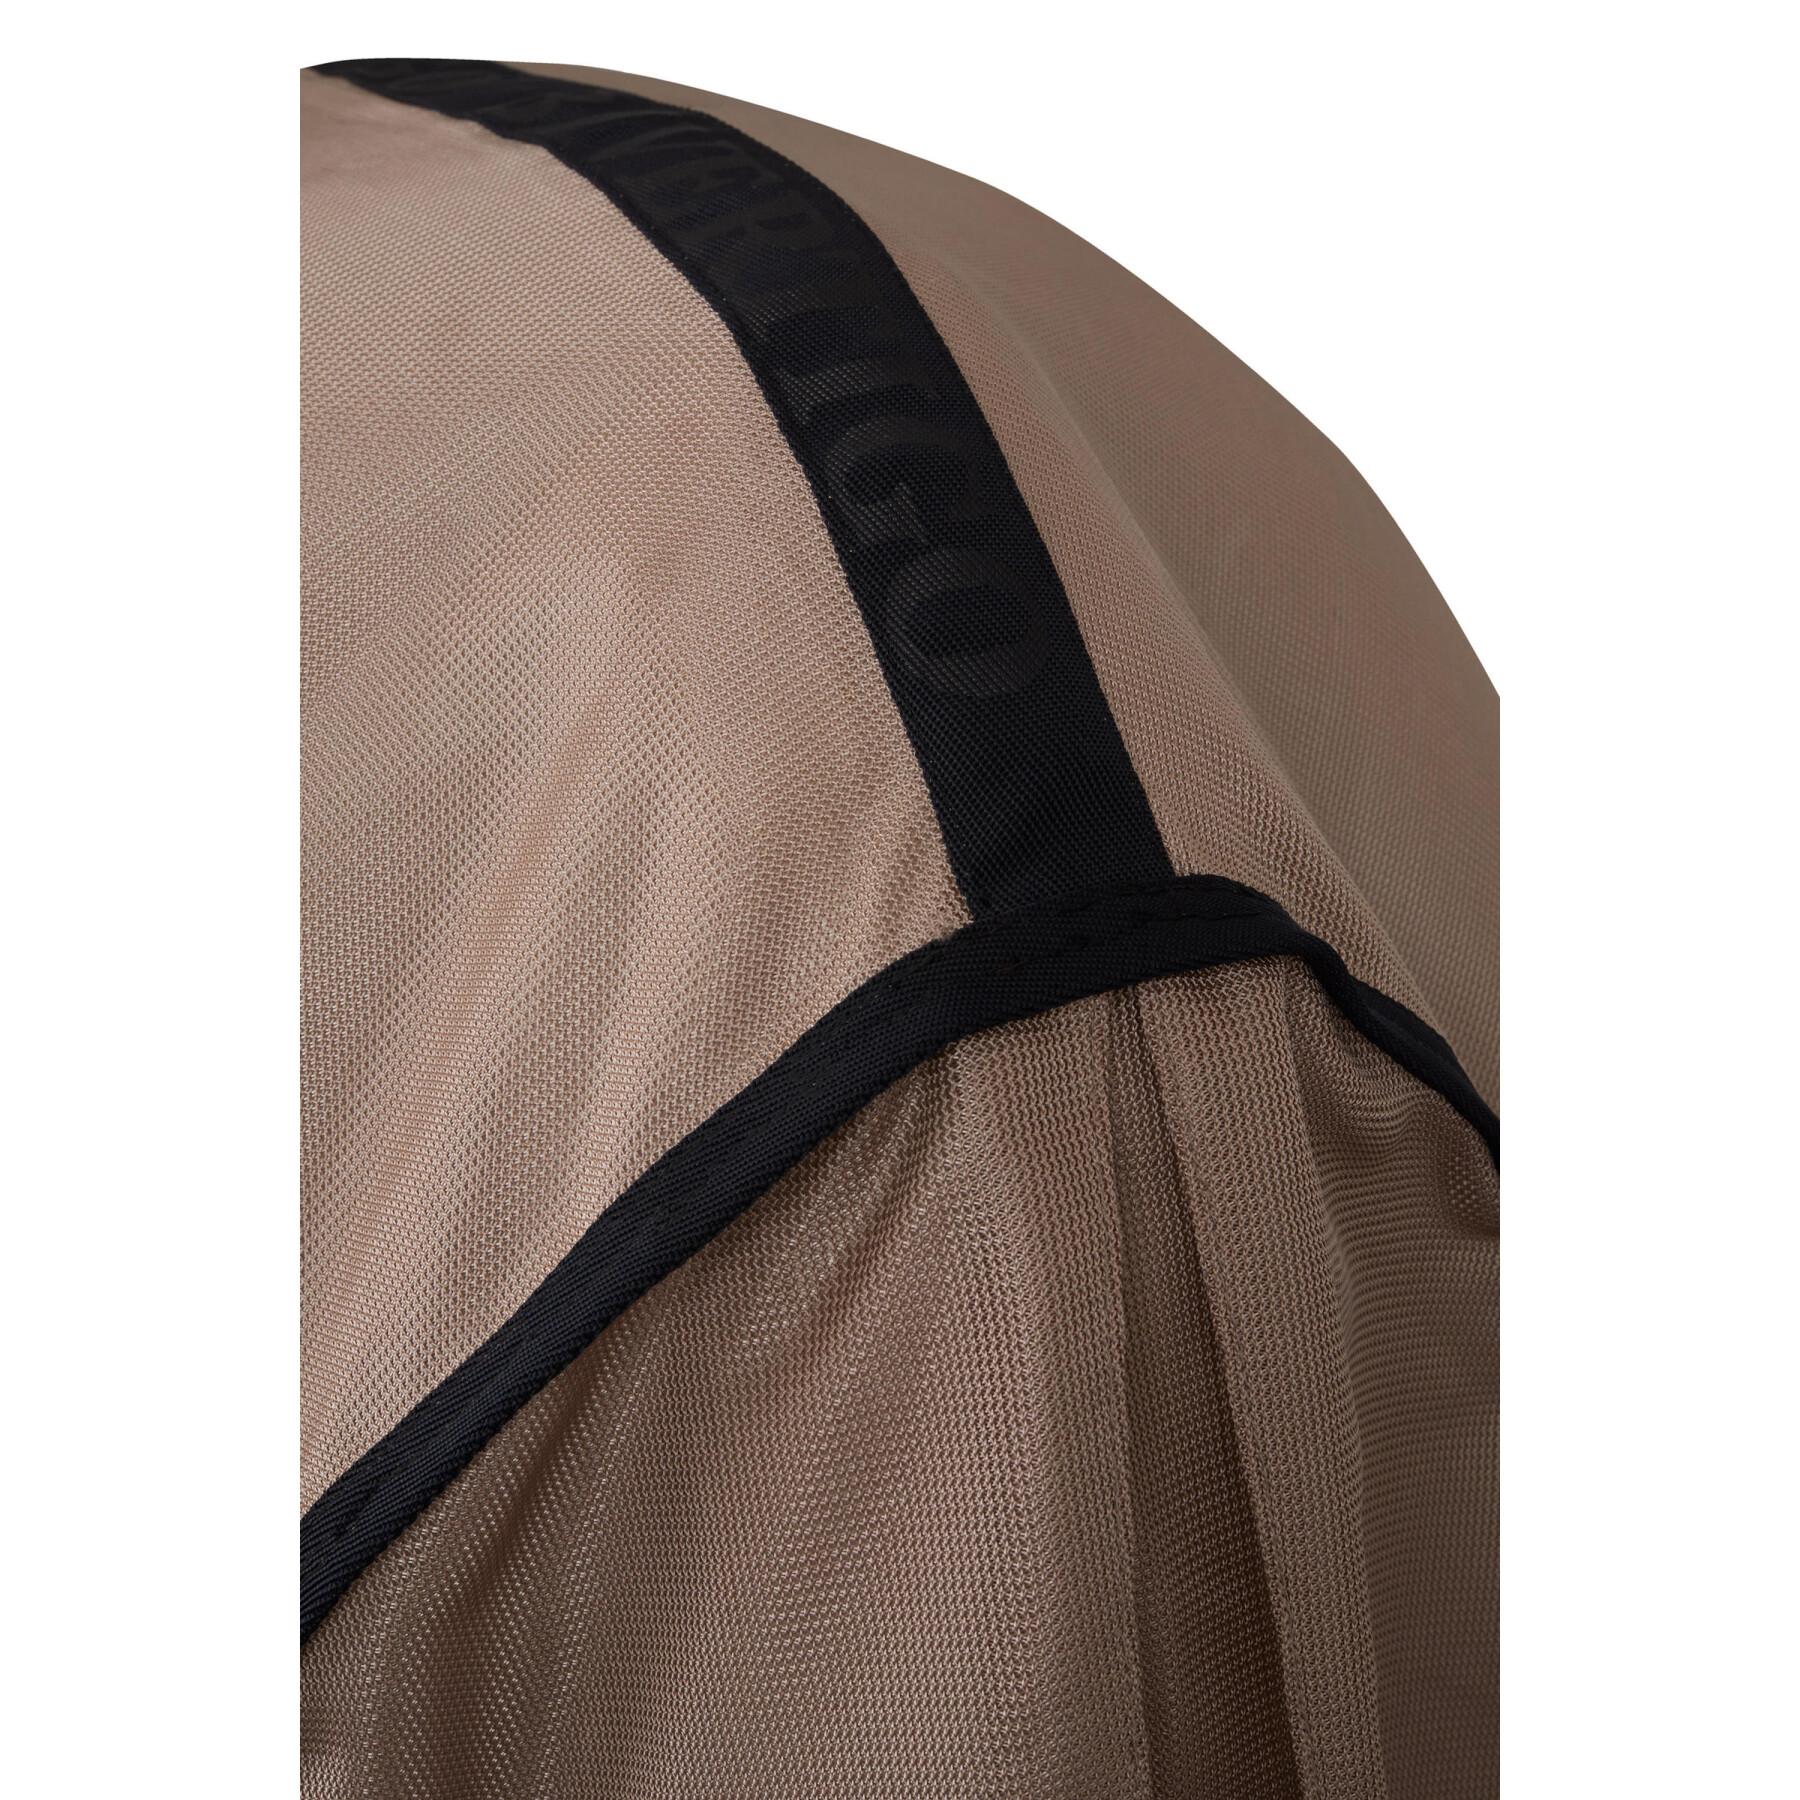 Couverture anti-mouches pour cheval avec couvre-cou amovible et protection UV B Vertigo Delux 0g